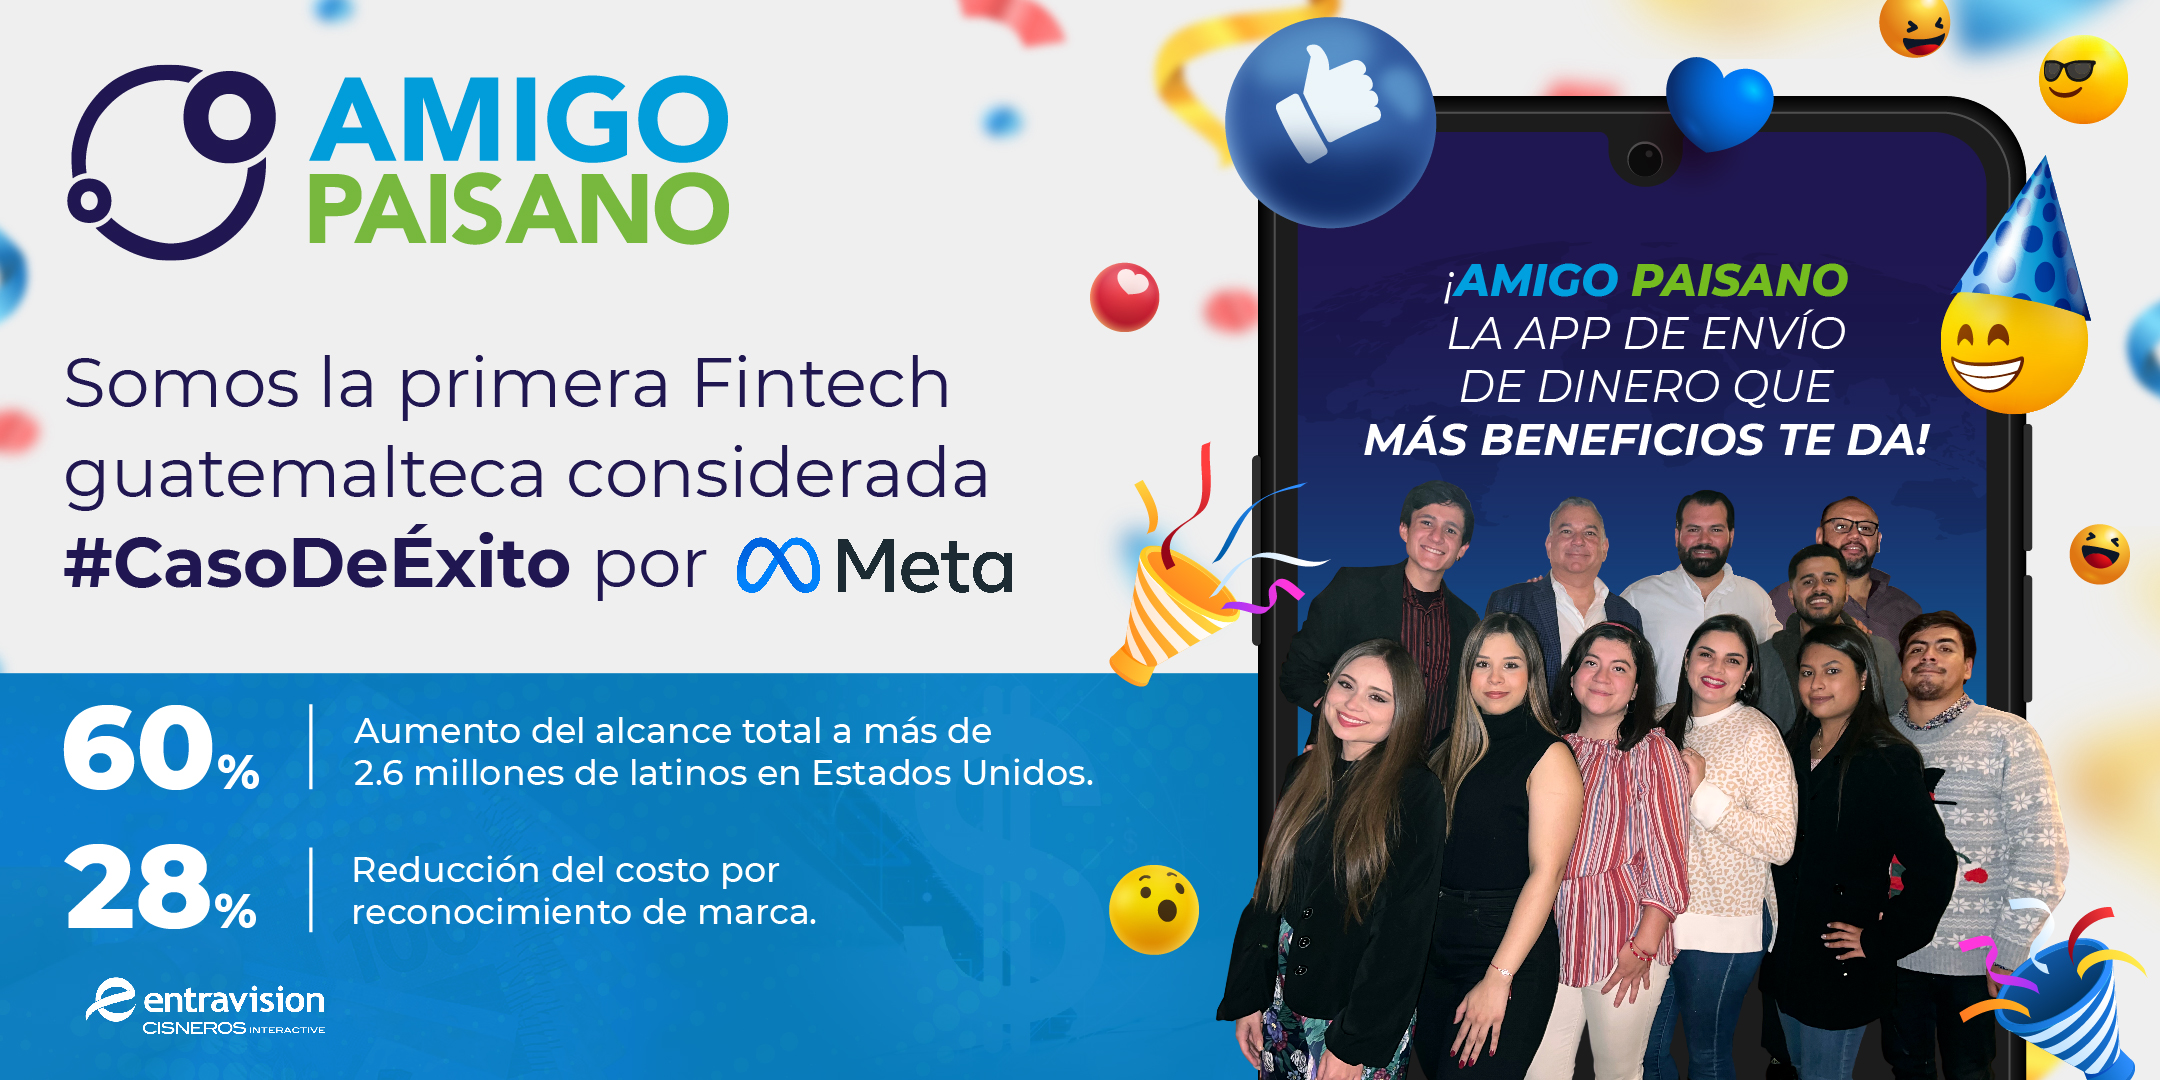 Amigo Paisano recibe el reconocimiento de Meta (Facebook) como el primerla primera fintech guatemalteca en ser considerada Caso de Éxito.